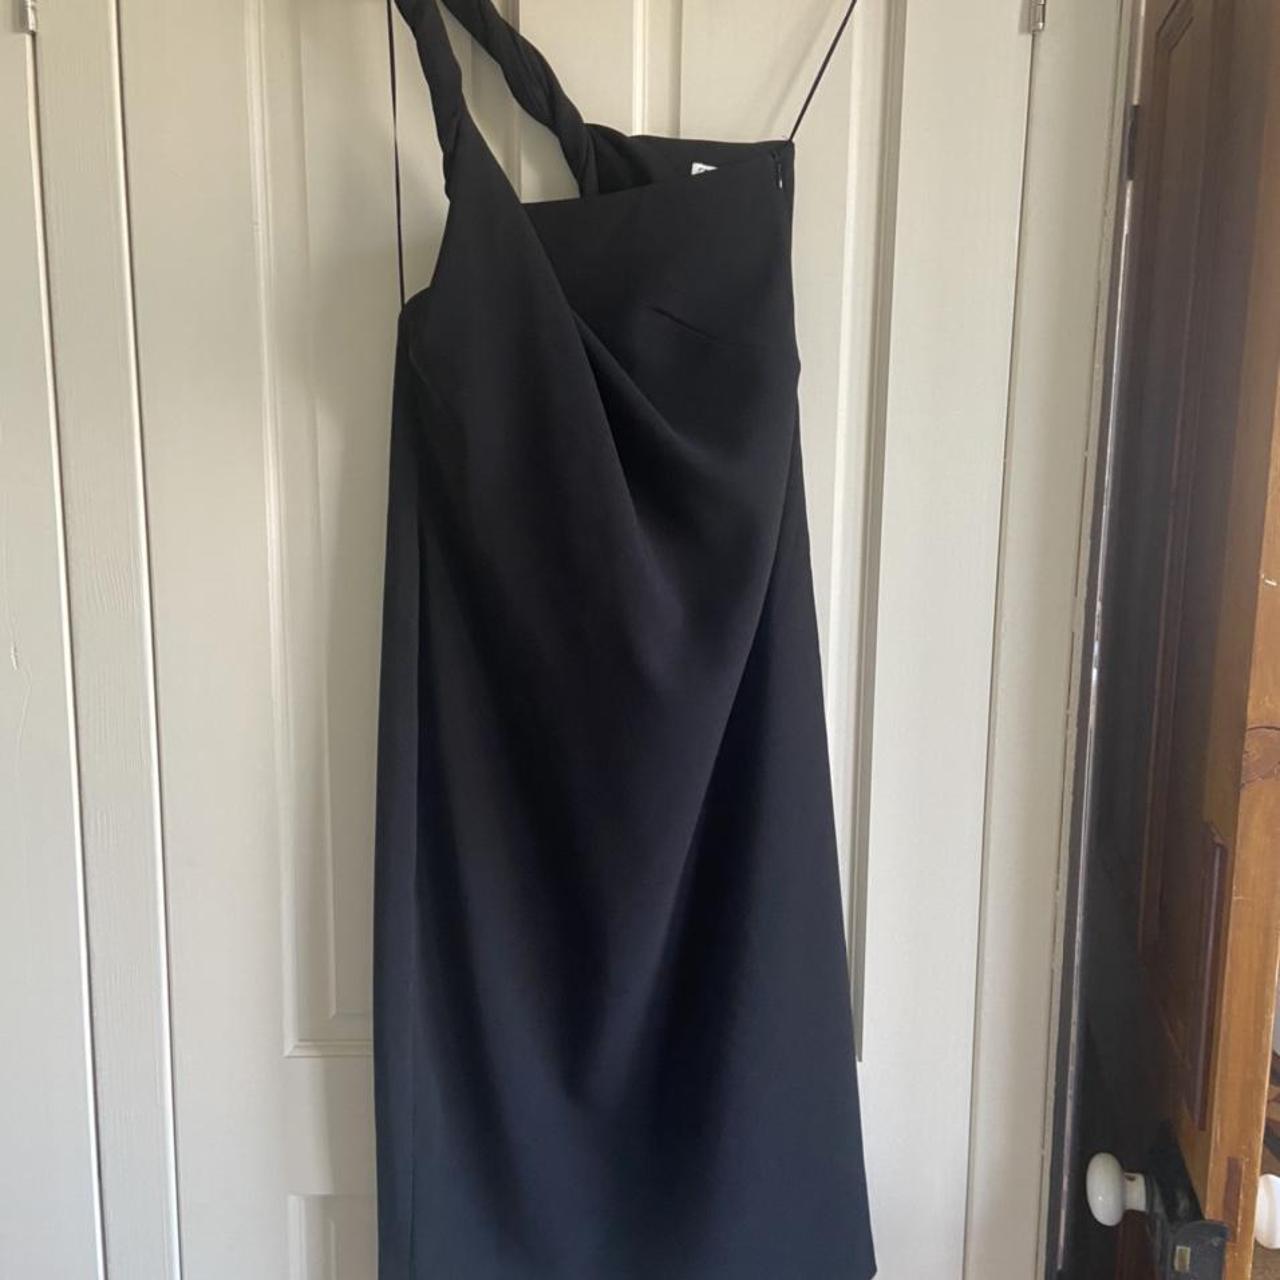 Zara twisted one shouldered black maxi dress. Never... - Depop